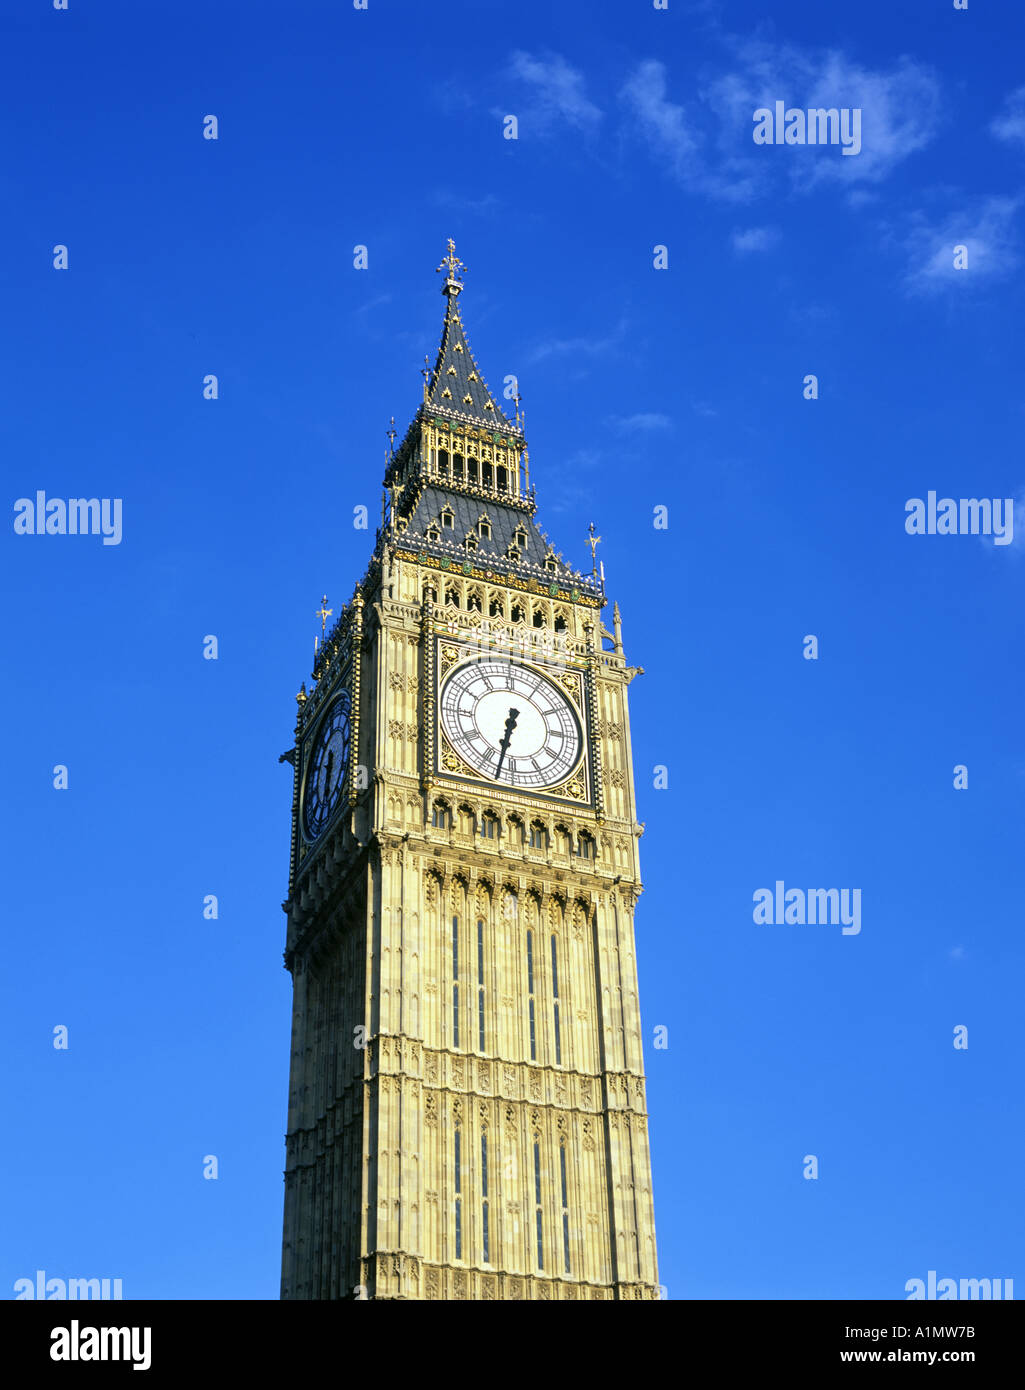 La tour de l'horloge de Big Ben à la Westminster Chambres du Parlement à Londres, Angleterre Banque D'Images